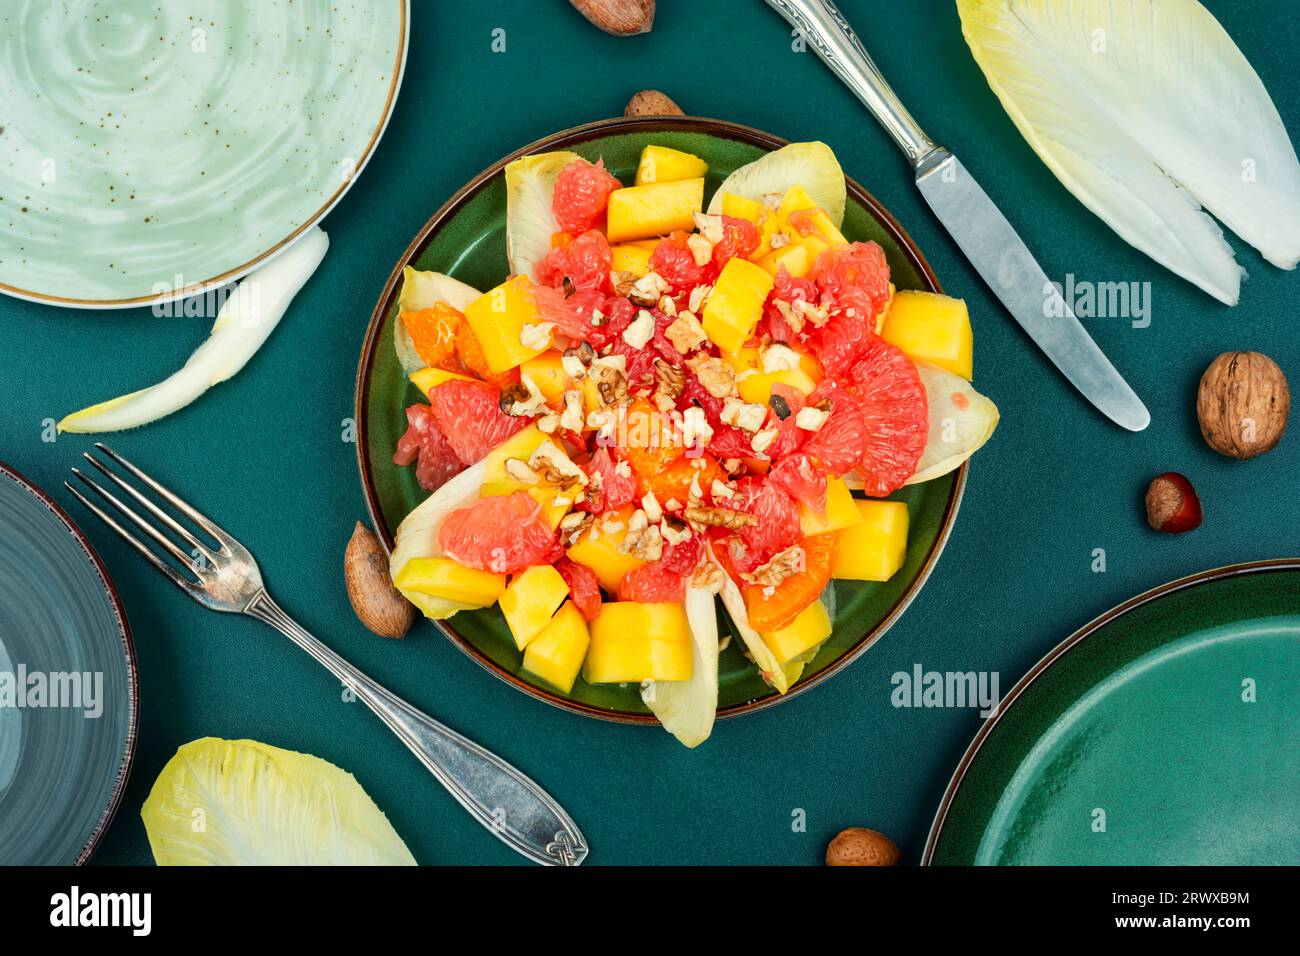 Salade de chicorée fraîche avec fruits et noix. Recette de repas sain Banque D'Images